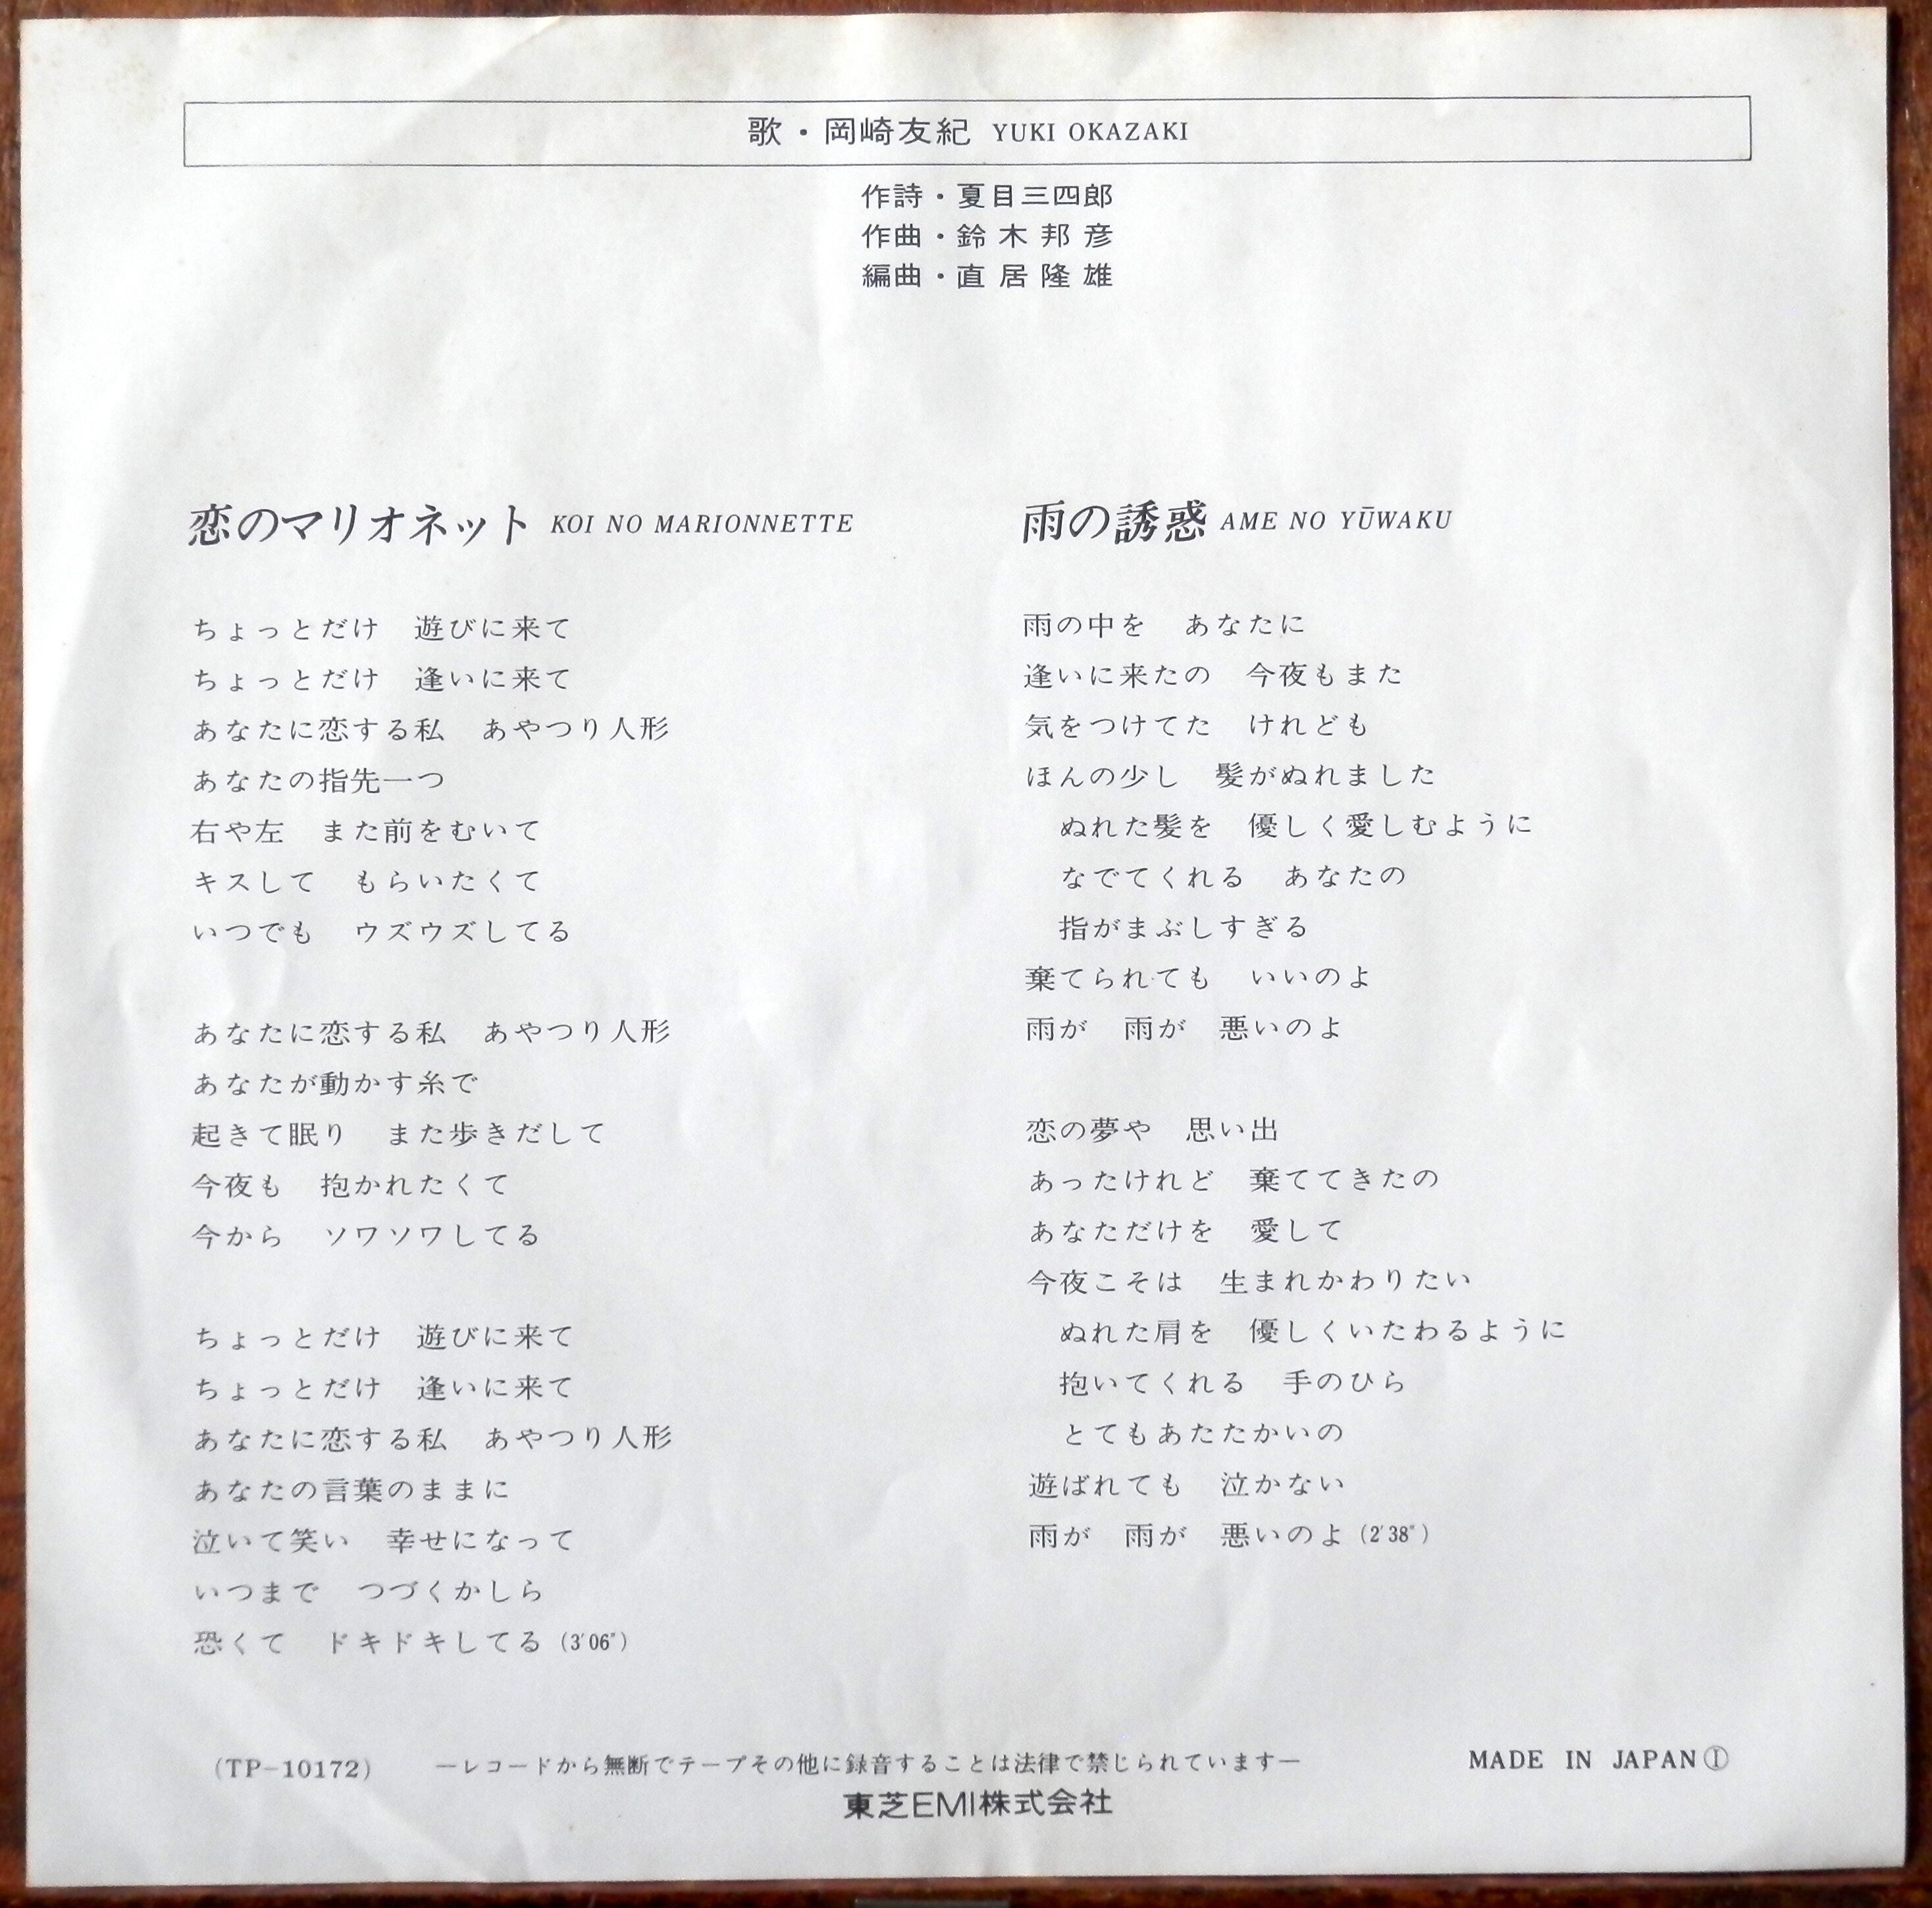 77【EP】岡崎友紀 恋のマリオネット 音盤窟レコード